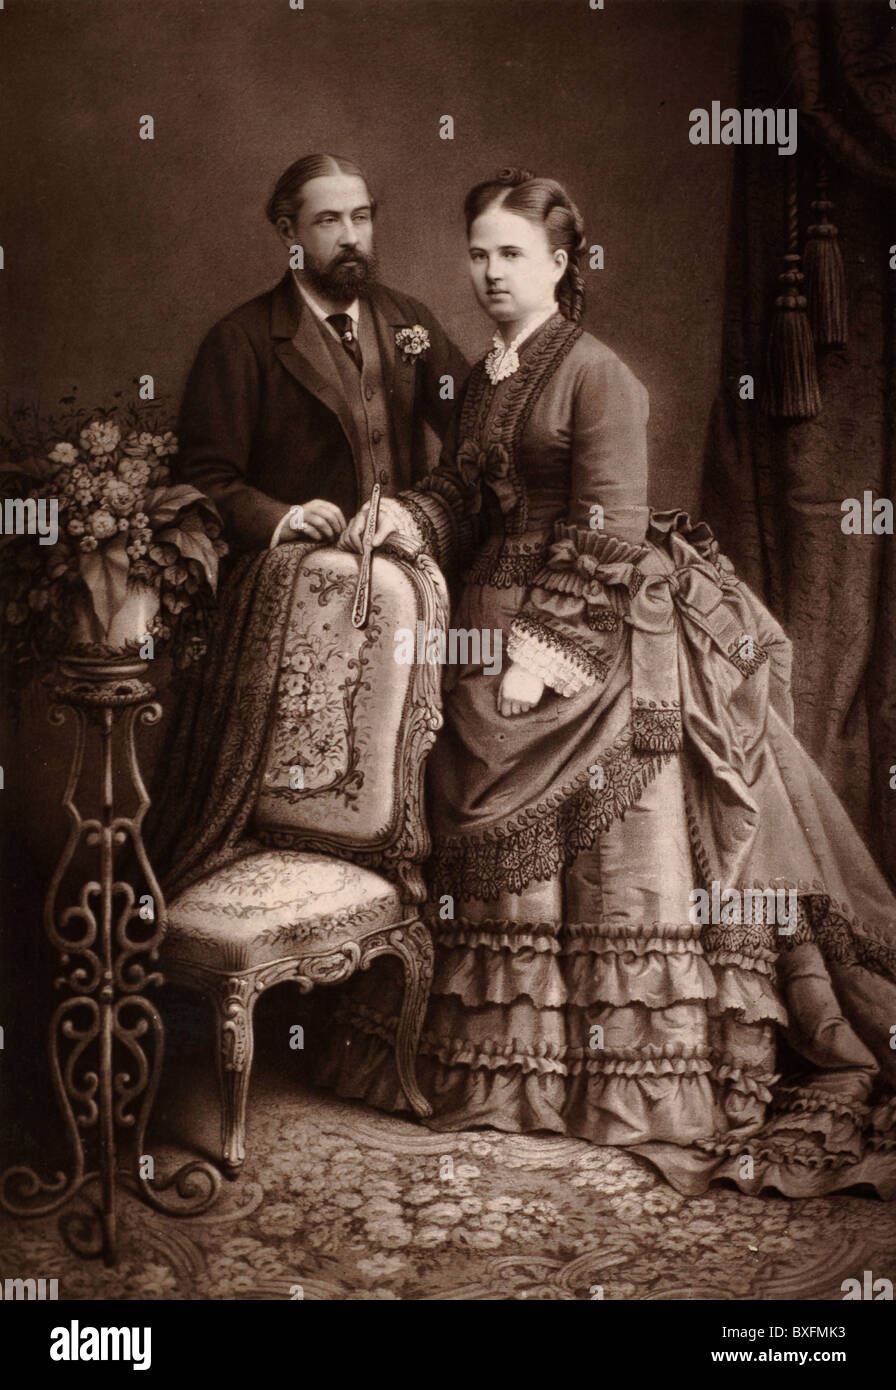 Prince Alfred (1844-1900) Duc d'Édimbourg (2e fils de la reine Victoria), Duc de Saxe-Coburg & Gotha, et Grand duchesse Maria Alexandrovna de Russie (1853-1920), deuxième fille du tsar Alexandre II de Russie. Photographie ancienne c1875 Banque D'Images